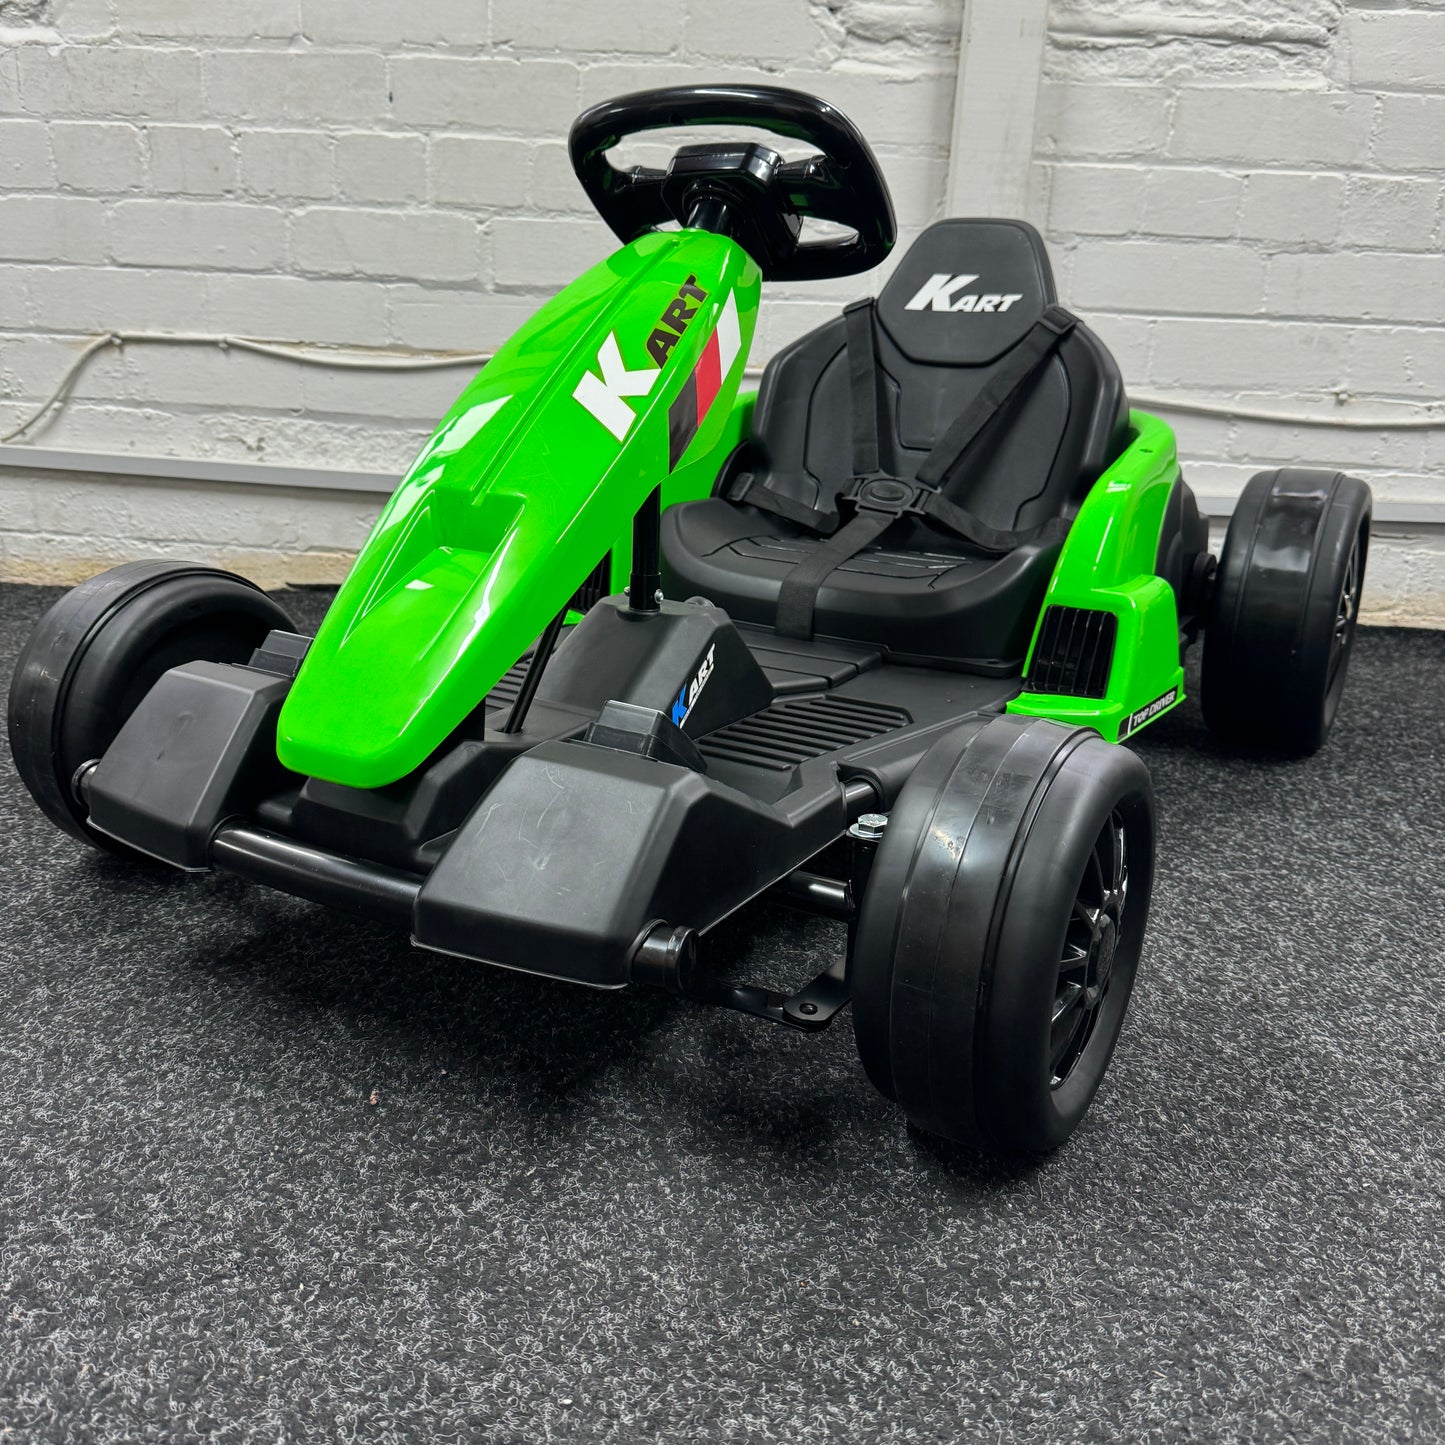 New Top Driver Kart 24V Drift Electric Kids Ride on Go Kart - Green